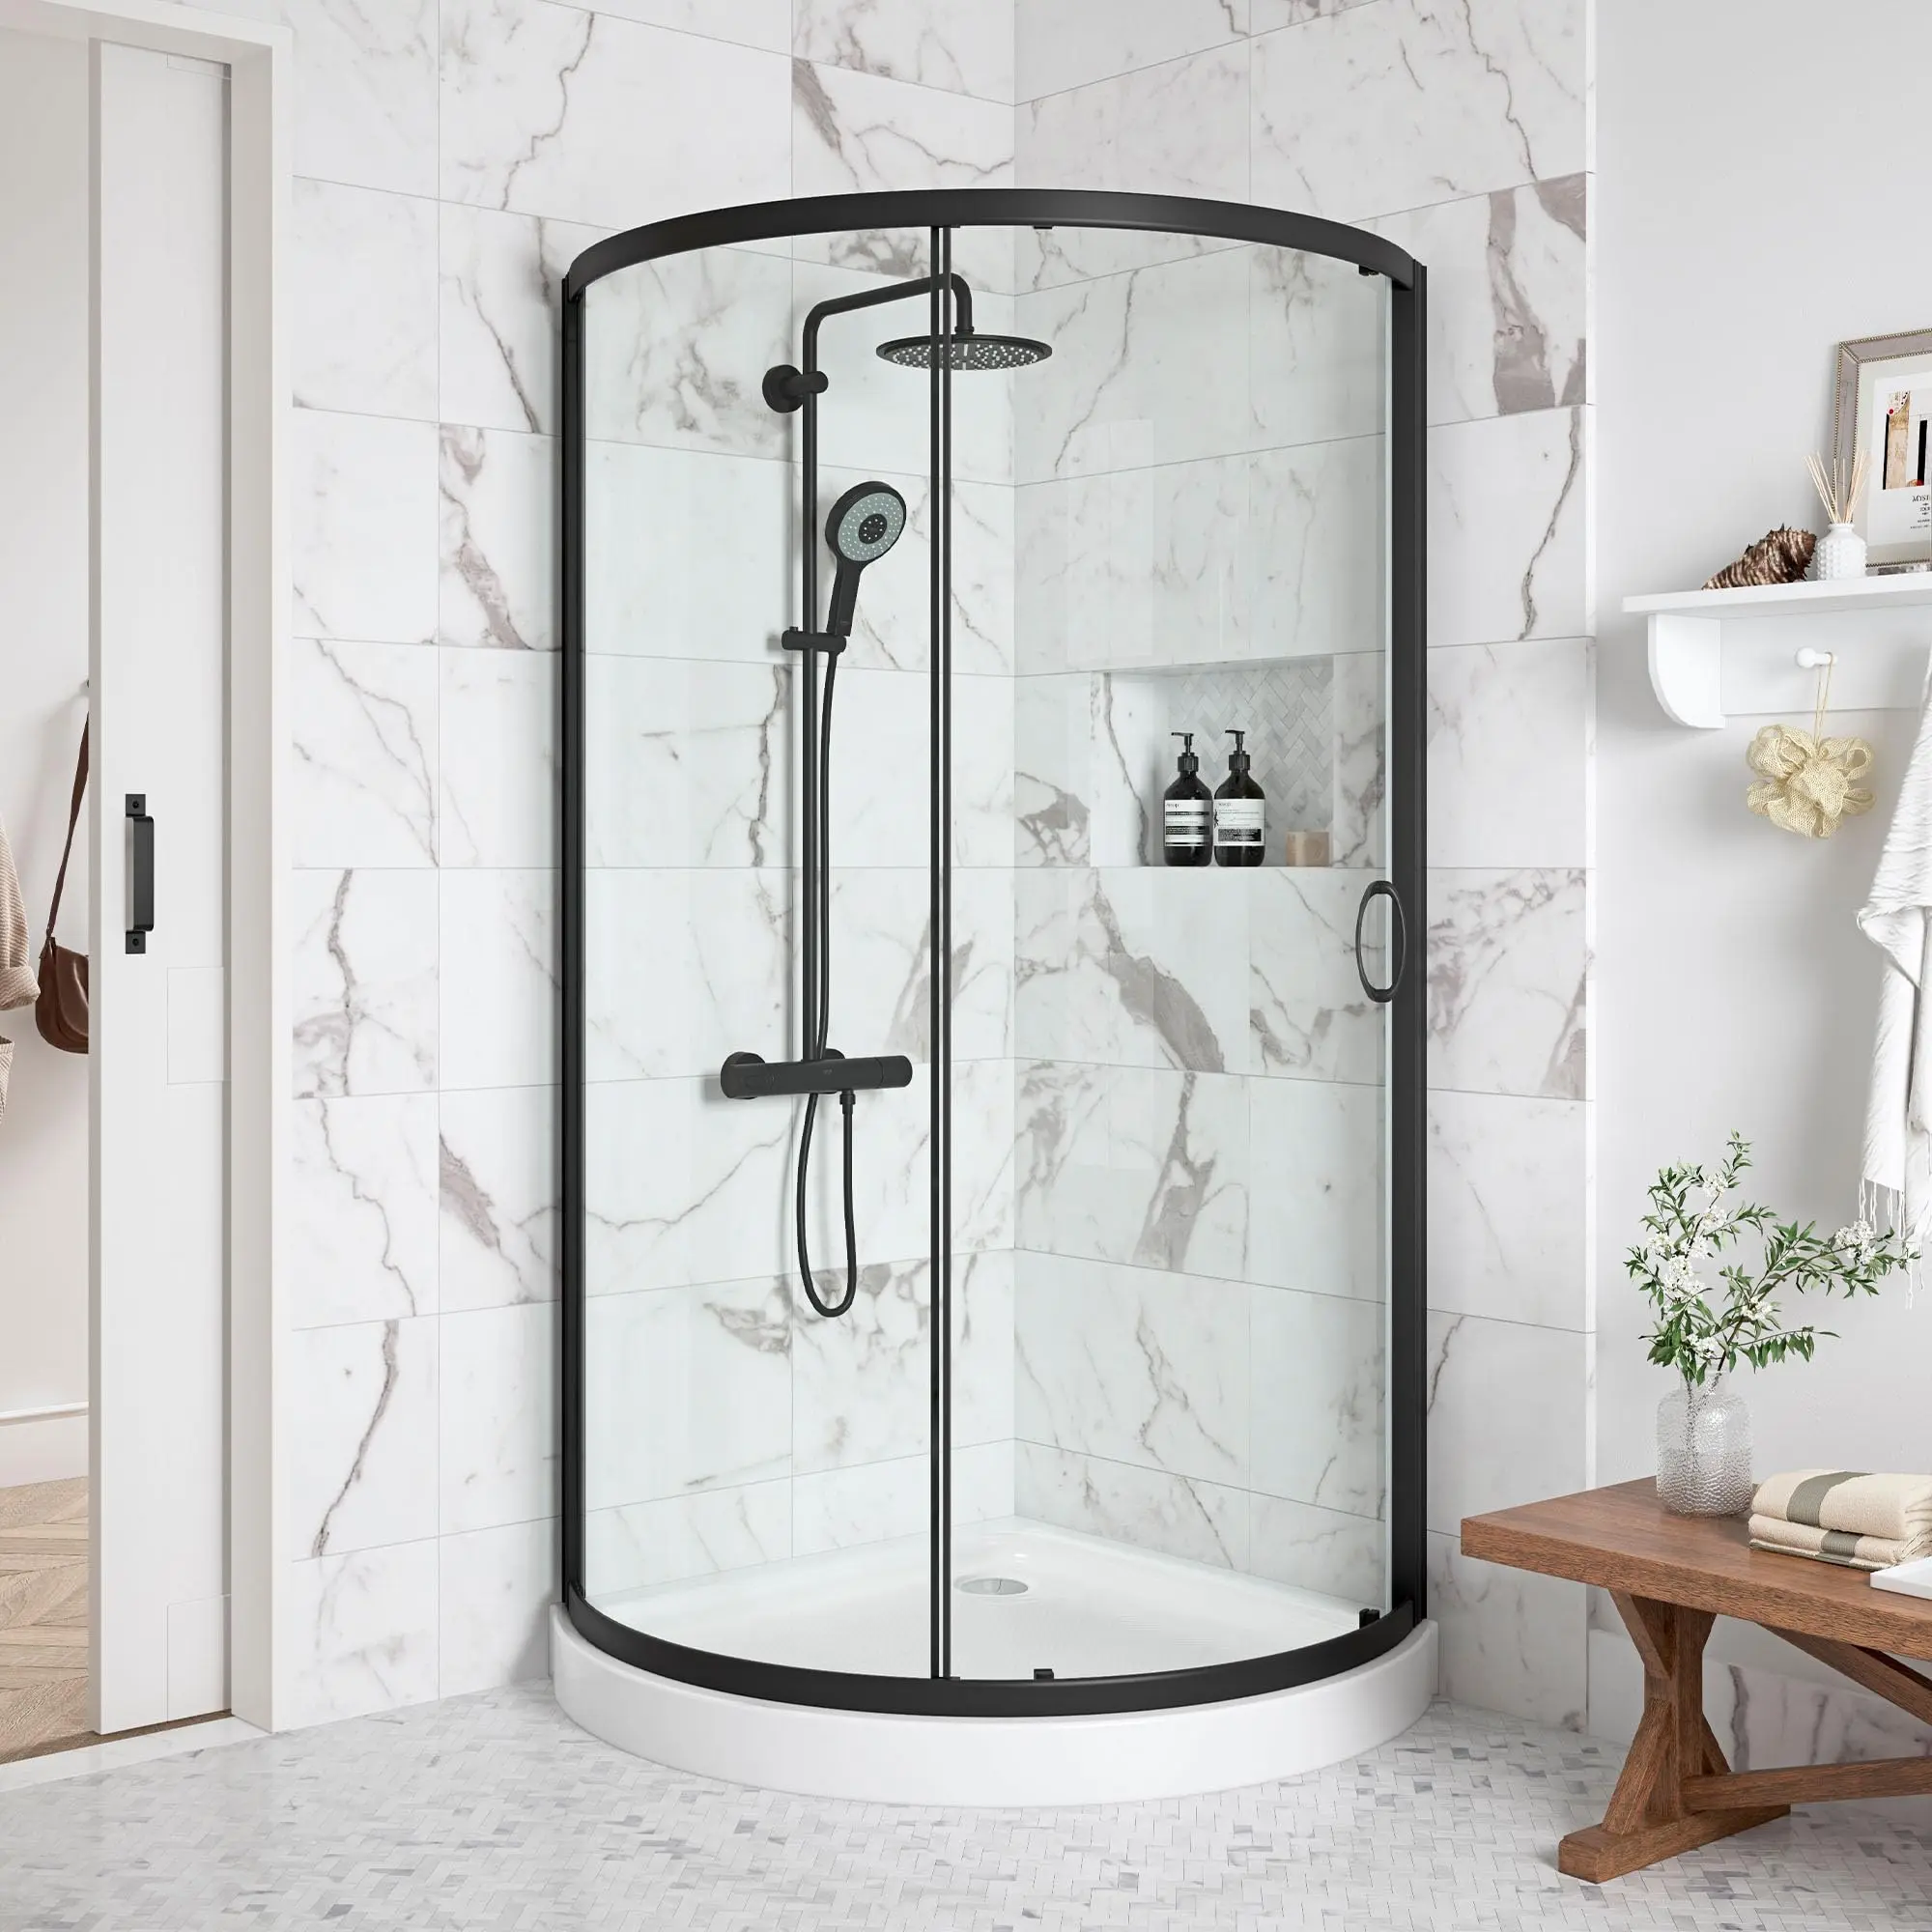 cabina ducha policarbonato - Cuánto mide una cabina de ducha